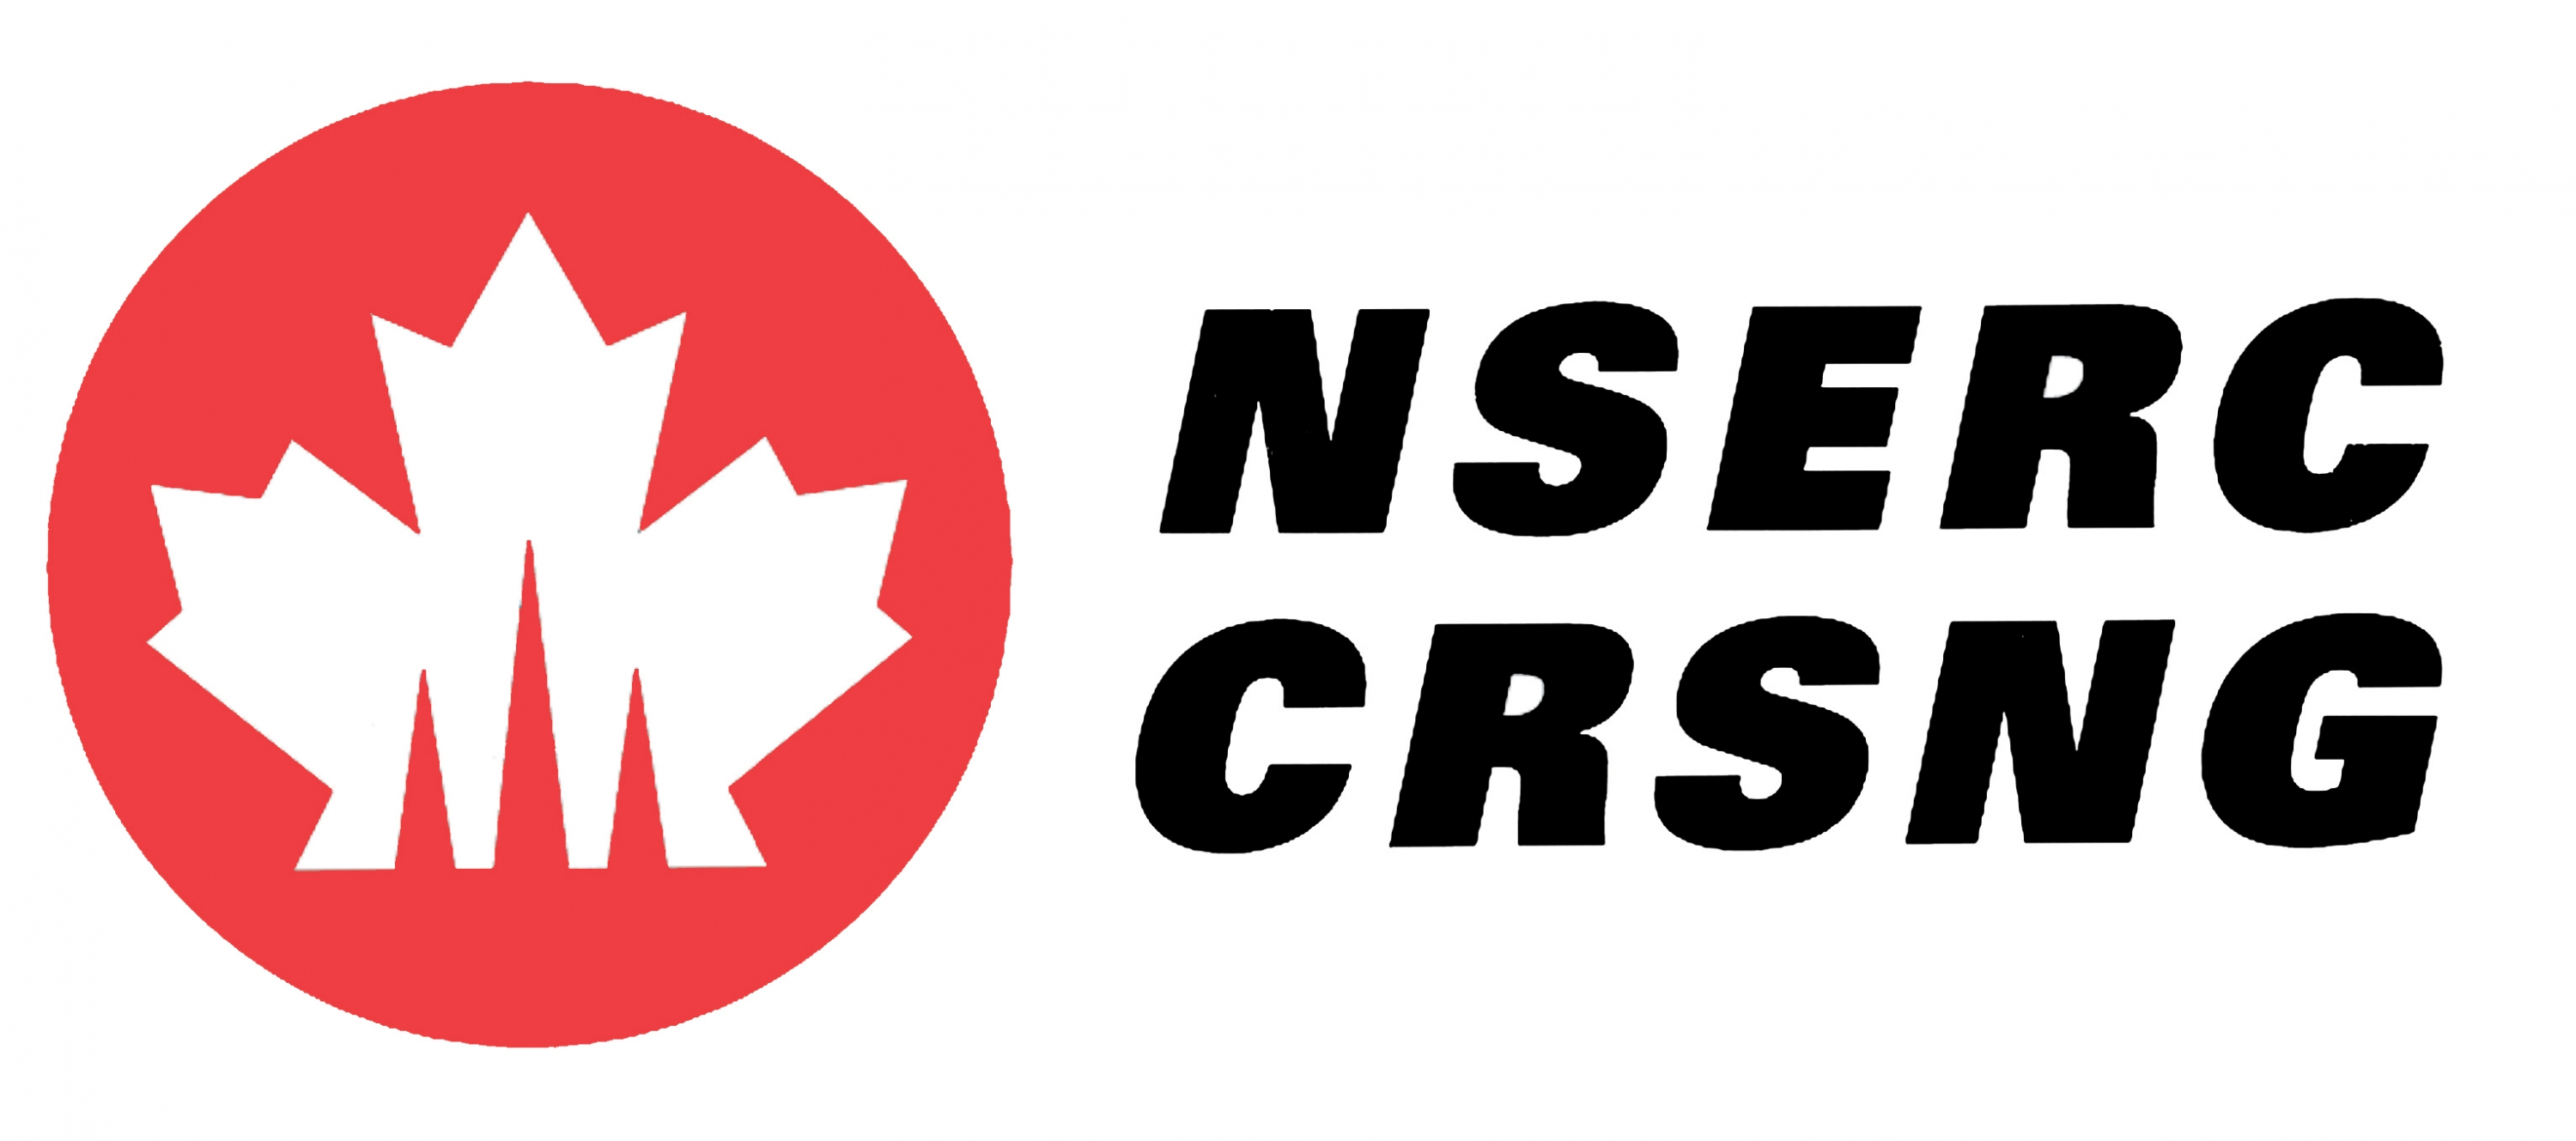 nserc_logo_color